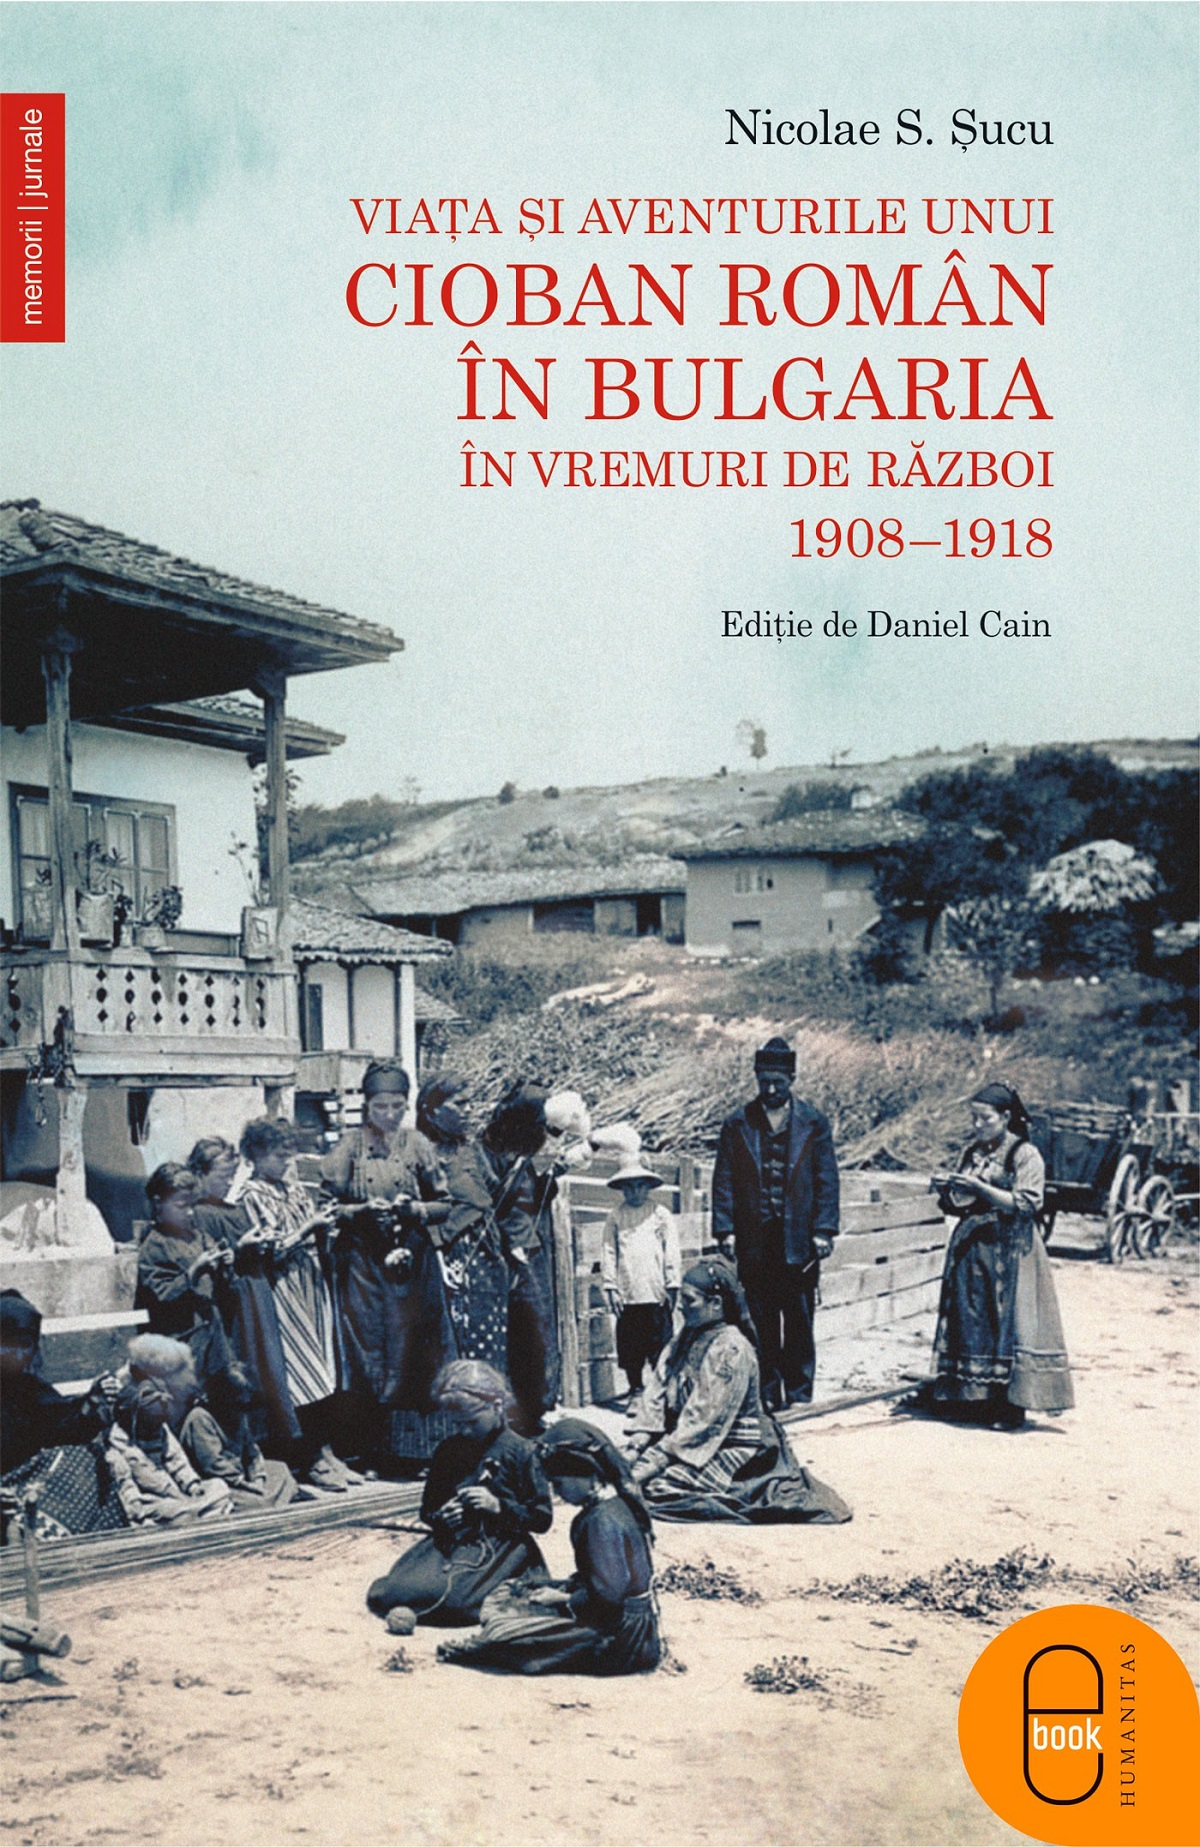 eBook Viata unui roman din Bulgaria - Nicolae S. Sucu